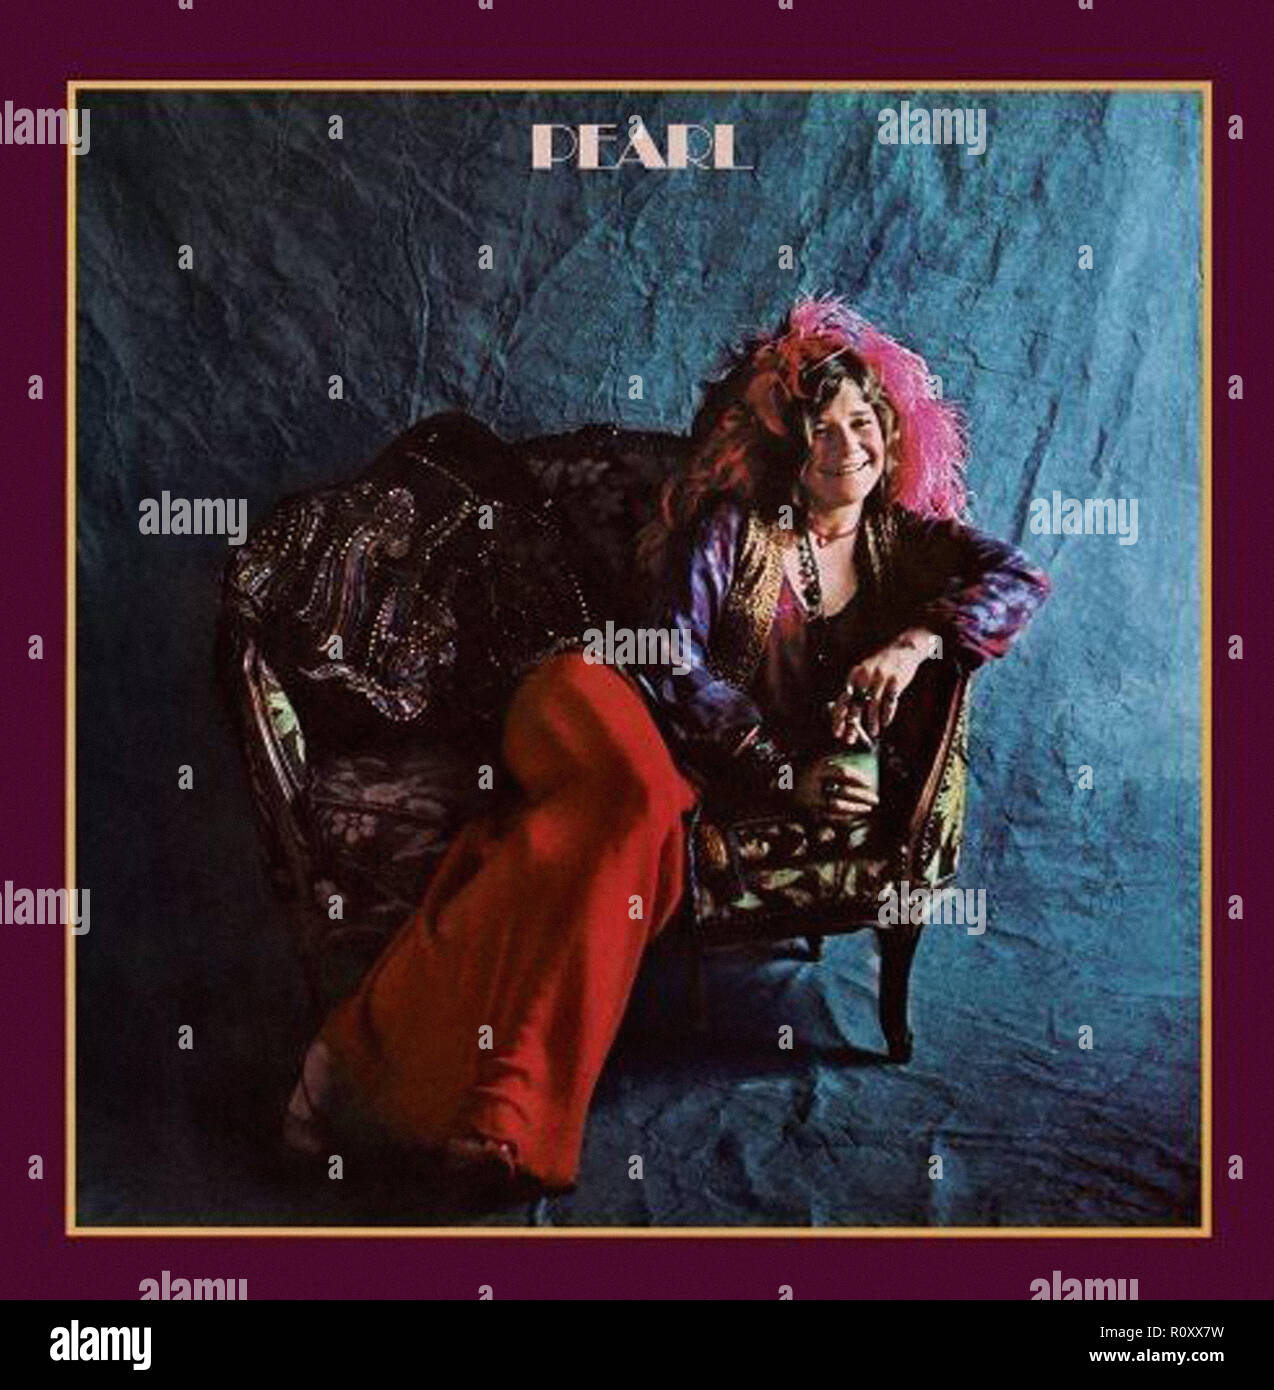 Perla - Janis Joplin - Vintage tapa del álbum Fotografía de stock - Alamy